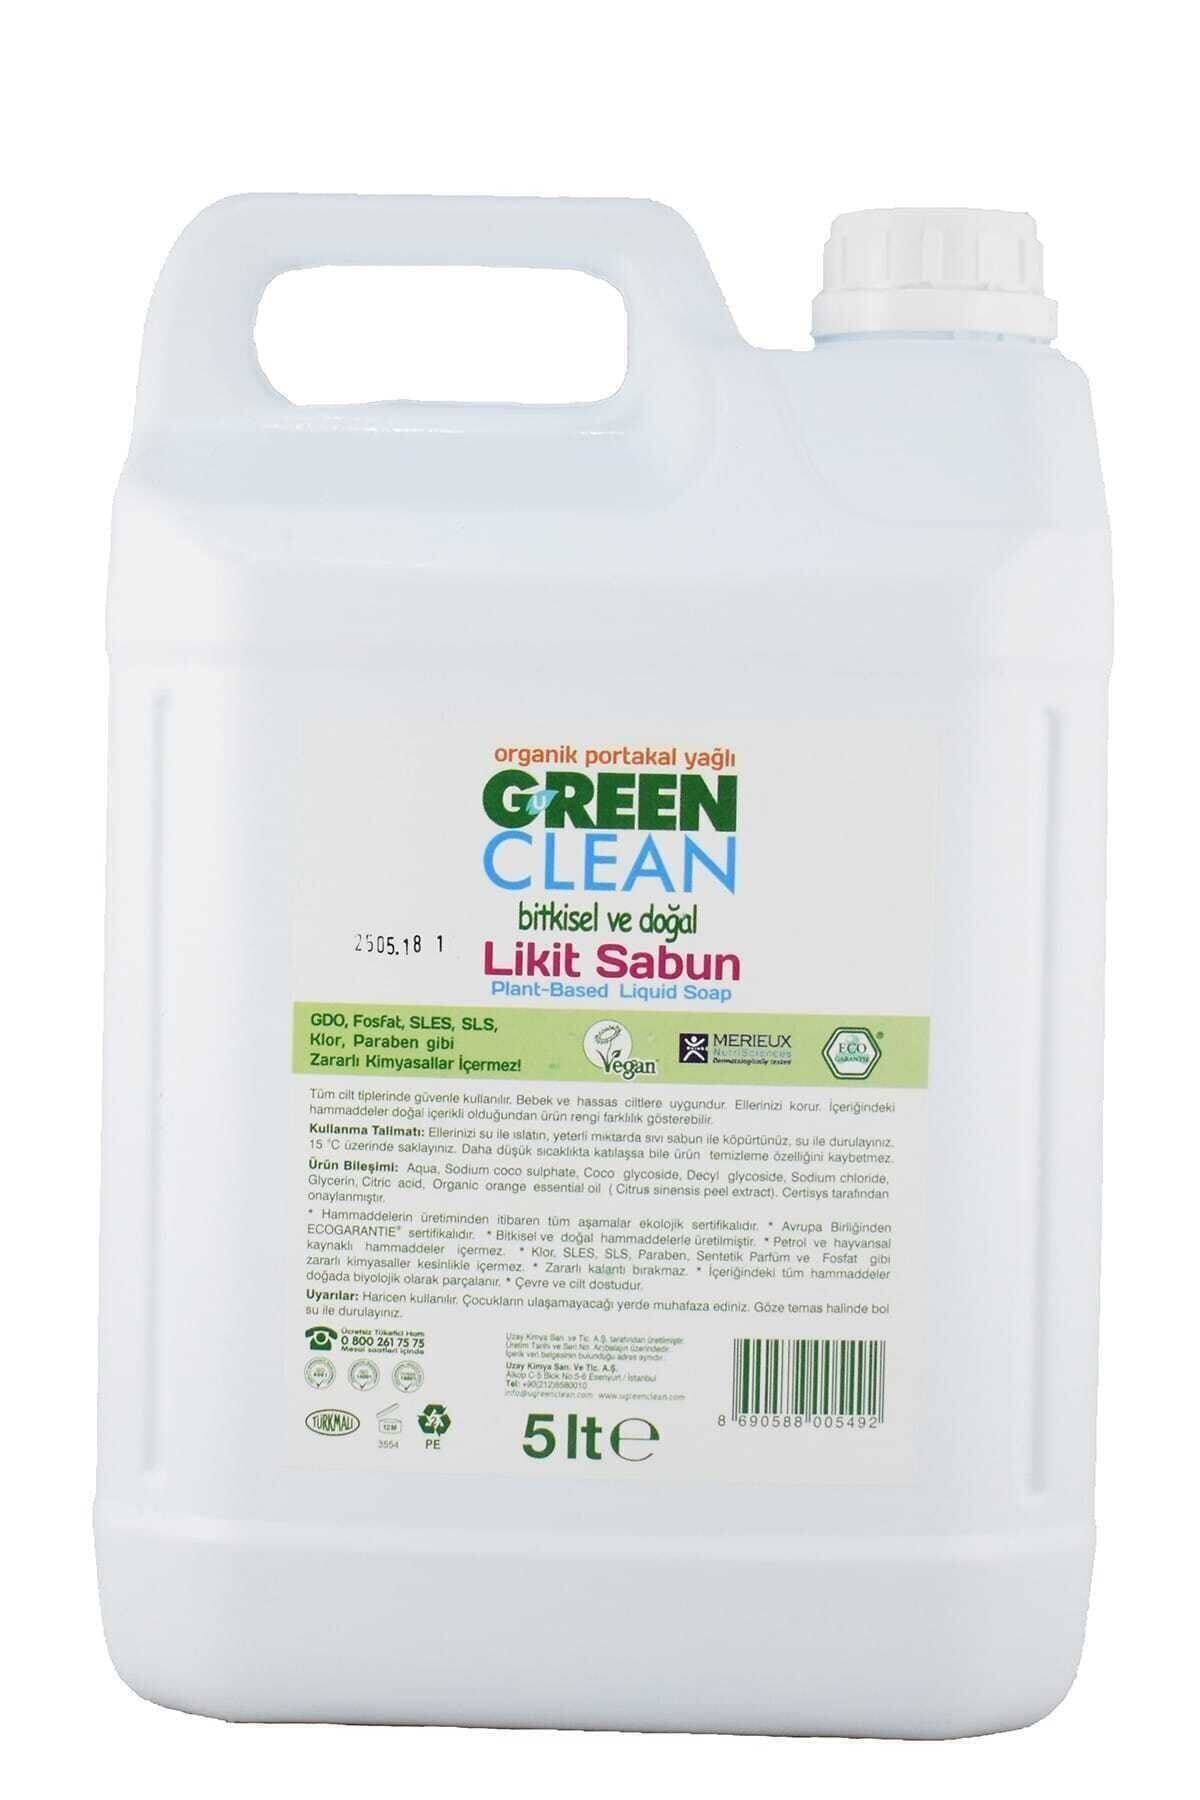 Green Clean Bitkisel Sıvı El Sabunu Organik Portakal Yağlı 5lt